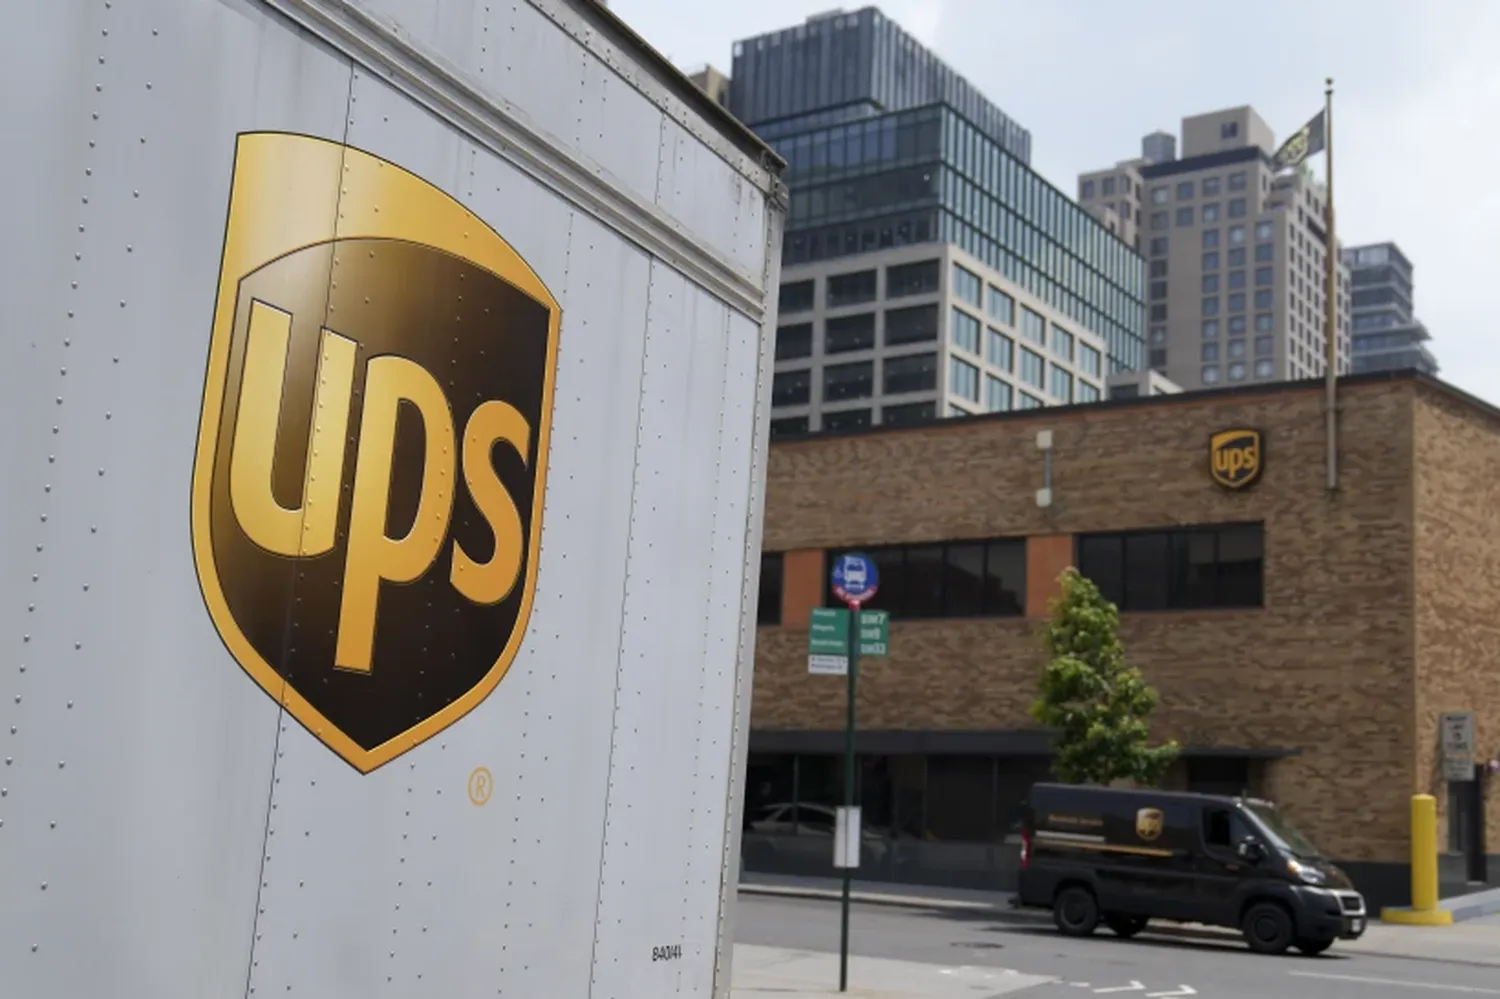 UPS - USPS Partnership